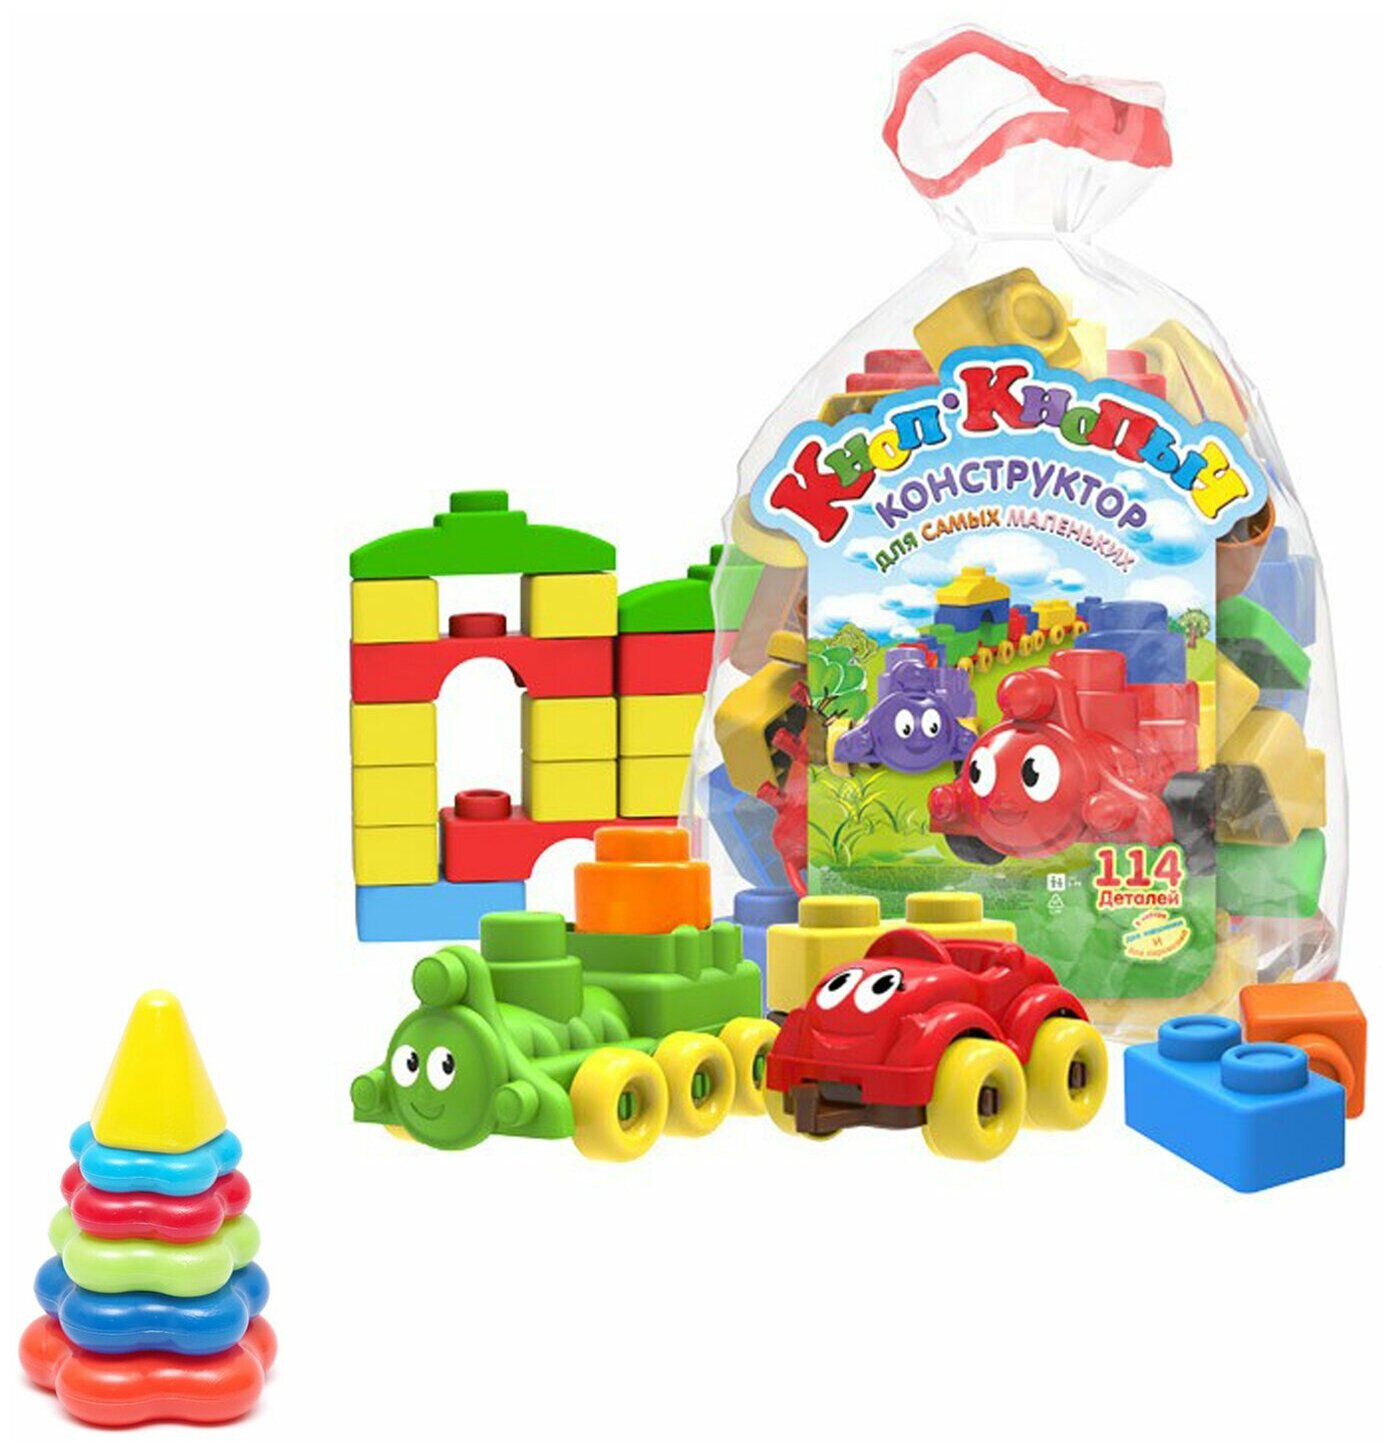 Развивающие игрушки для малышей набор Пирамидка детская малая + Конструктор "Кноп-Кнопыч" 114 дет.